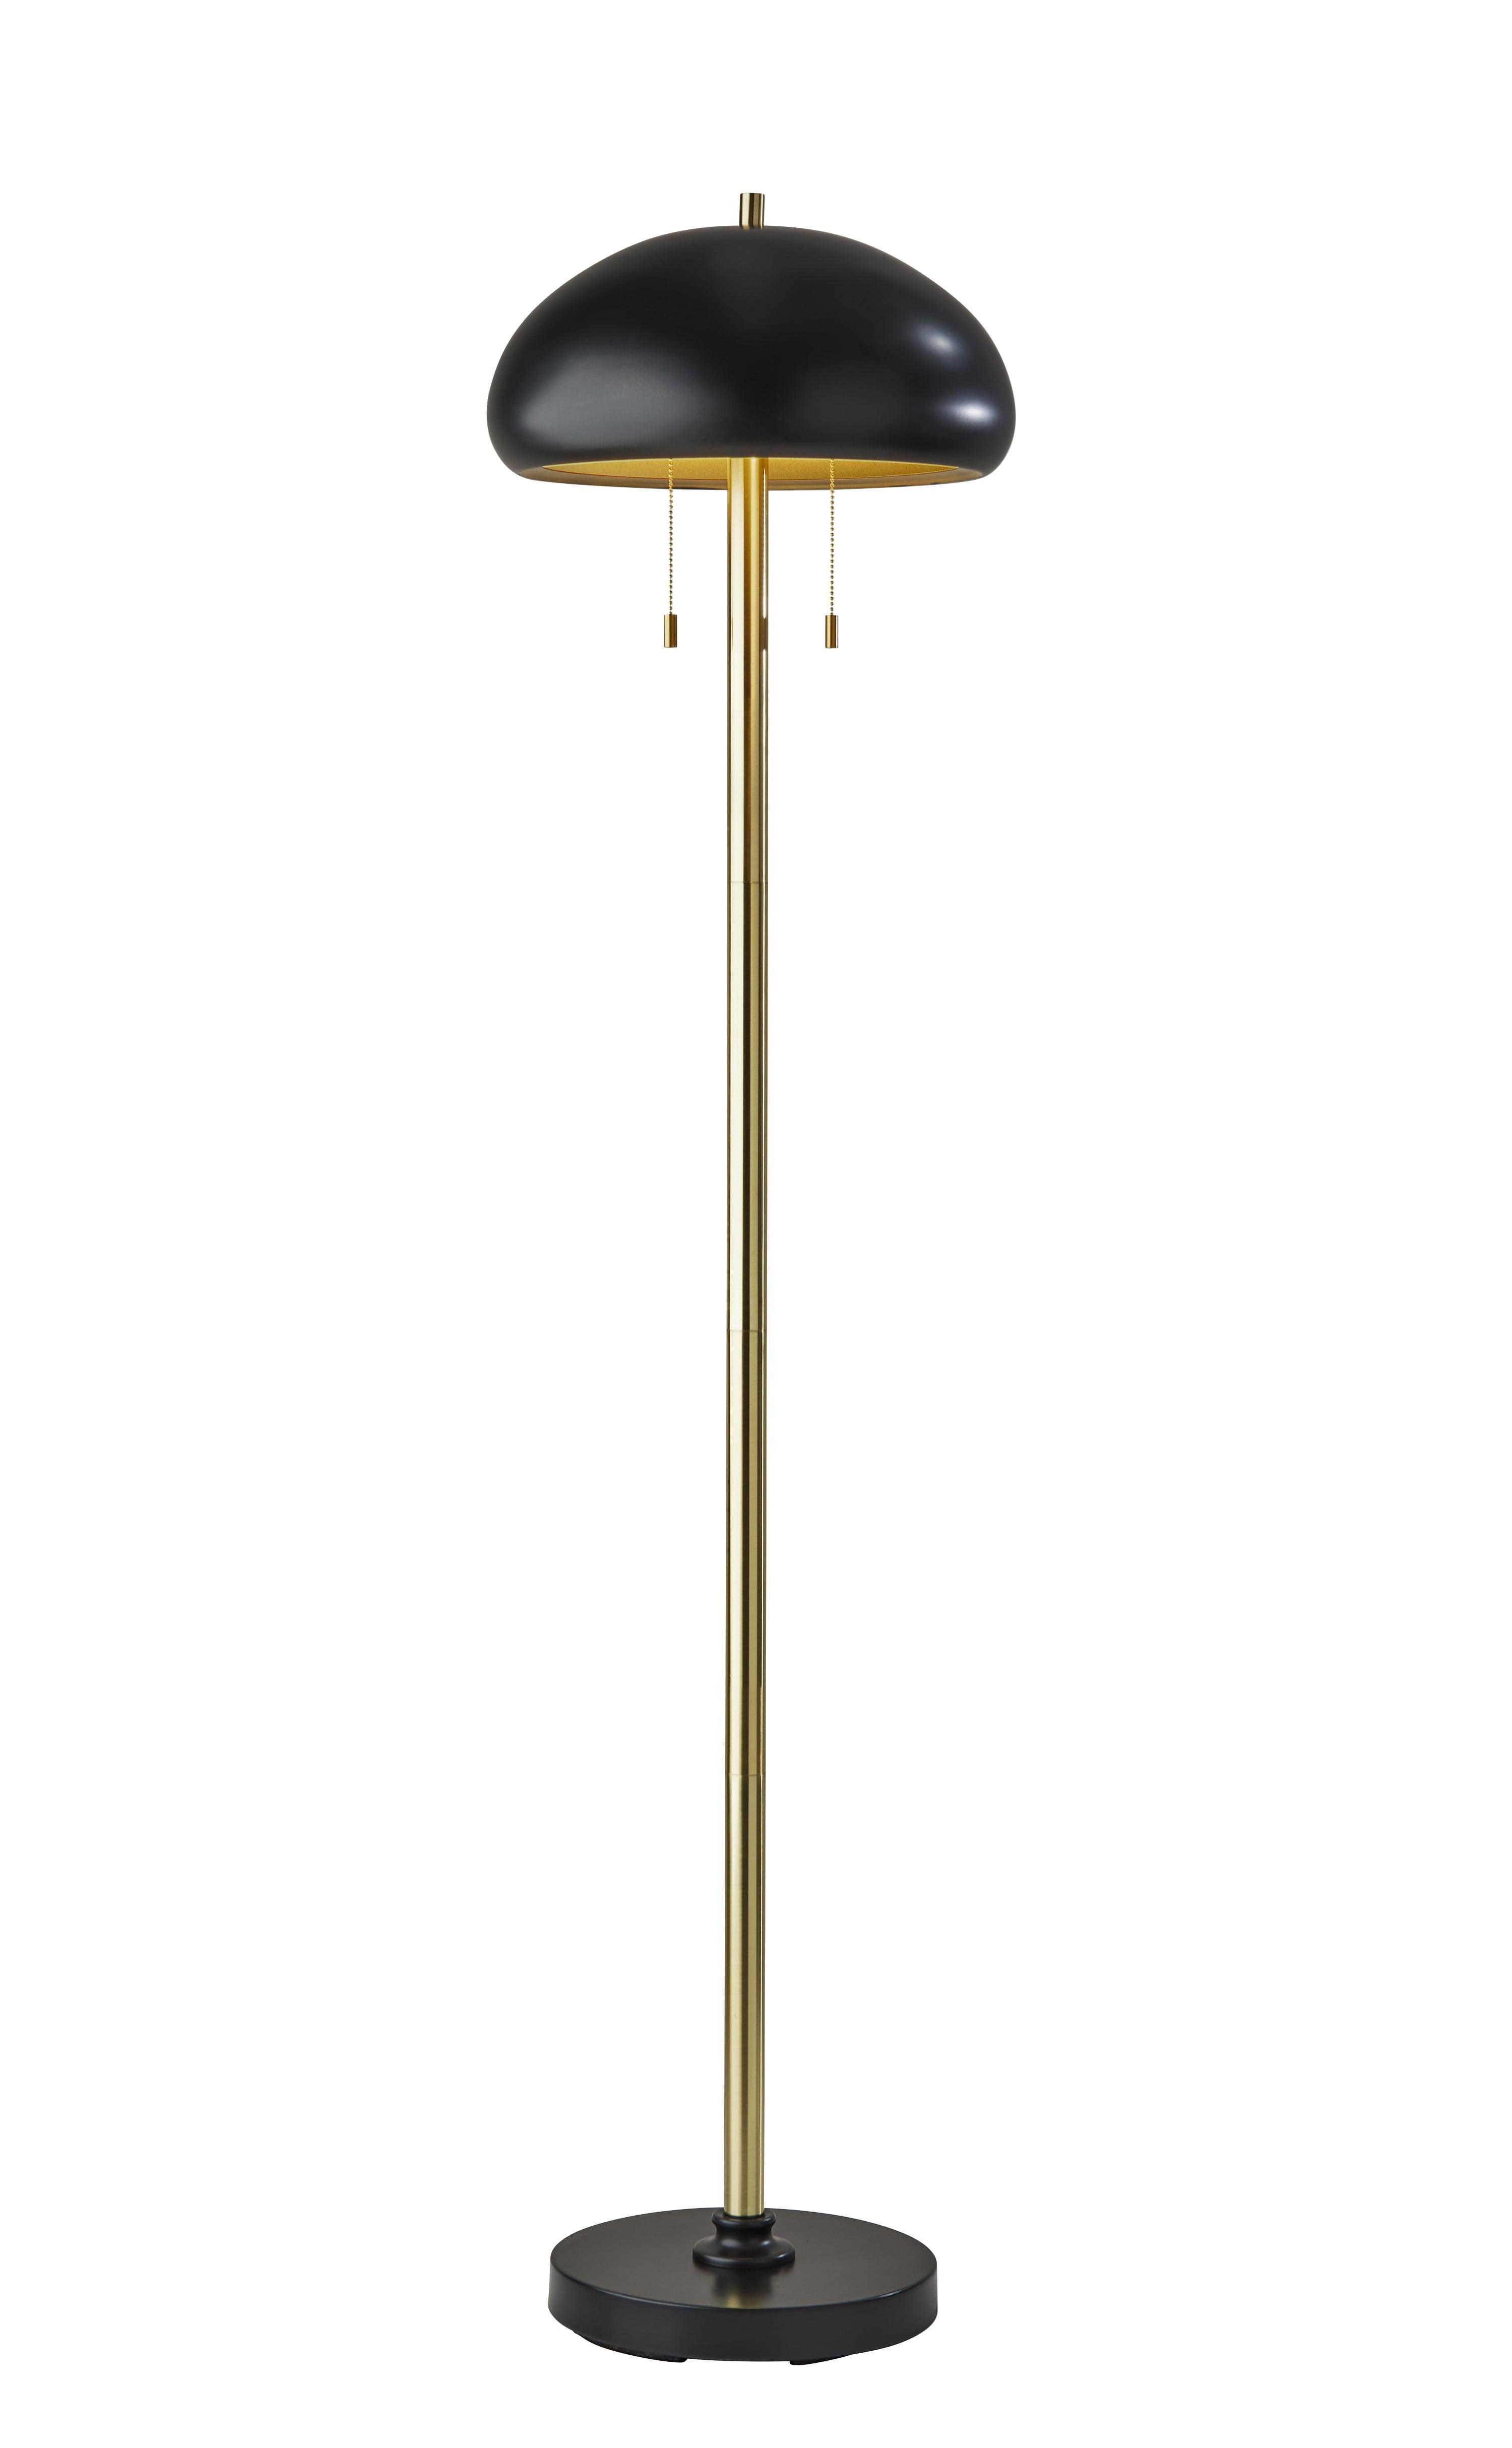 Mid-Century Dual-Pull Black & Antique Brass Cap Floor Lamp